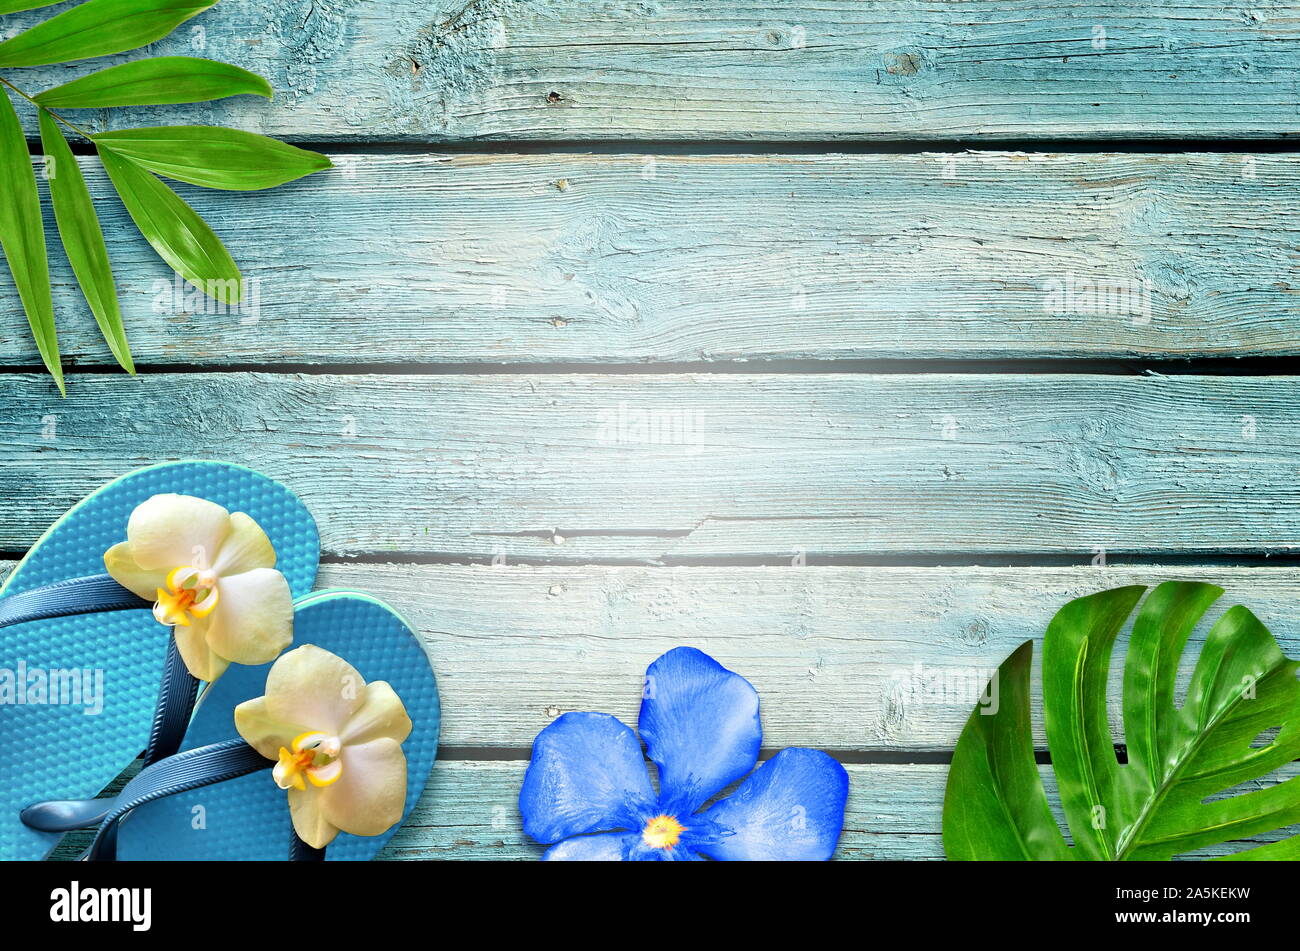 Sommer flachbild Hintergrund legen. Von tropischen Palmen Blätter, Flip Flops und Blume auf alten blauen Holz- Hintergrund. Stockfoto